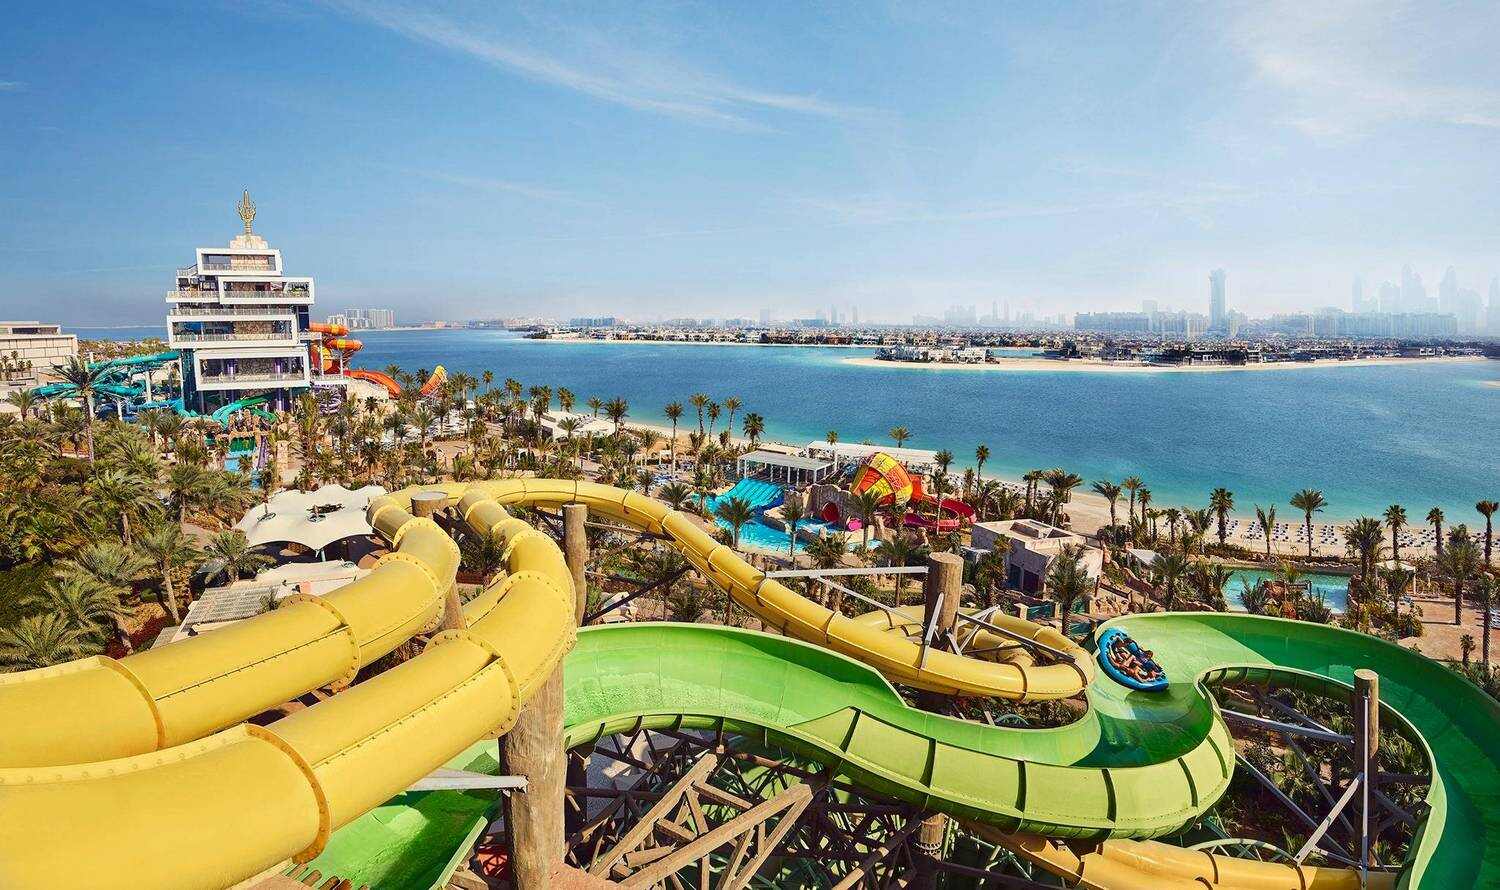 Аквапарк Aquaventure (Дубай, ОАЭ) - авторский обзор, часы работы, цены, фото